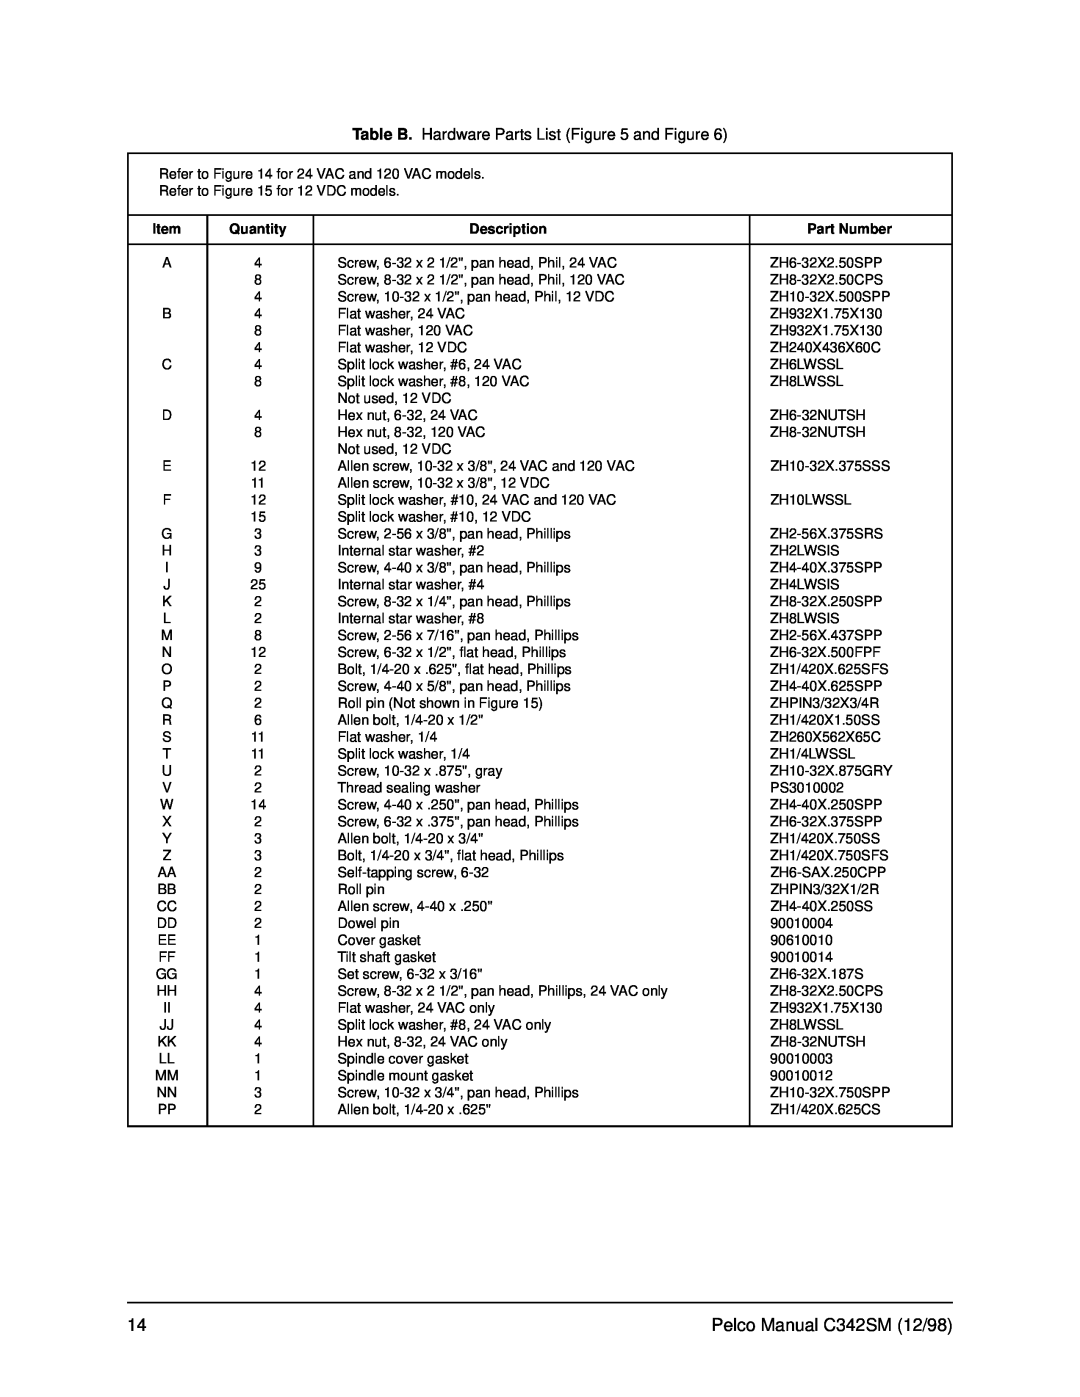 Pelco PT780 Table B. Hardware Parts List and Figure, Pelco Manual C342SM 12/98, Quantity, Description, Part Number 